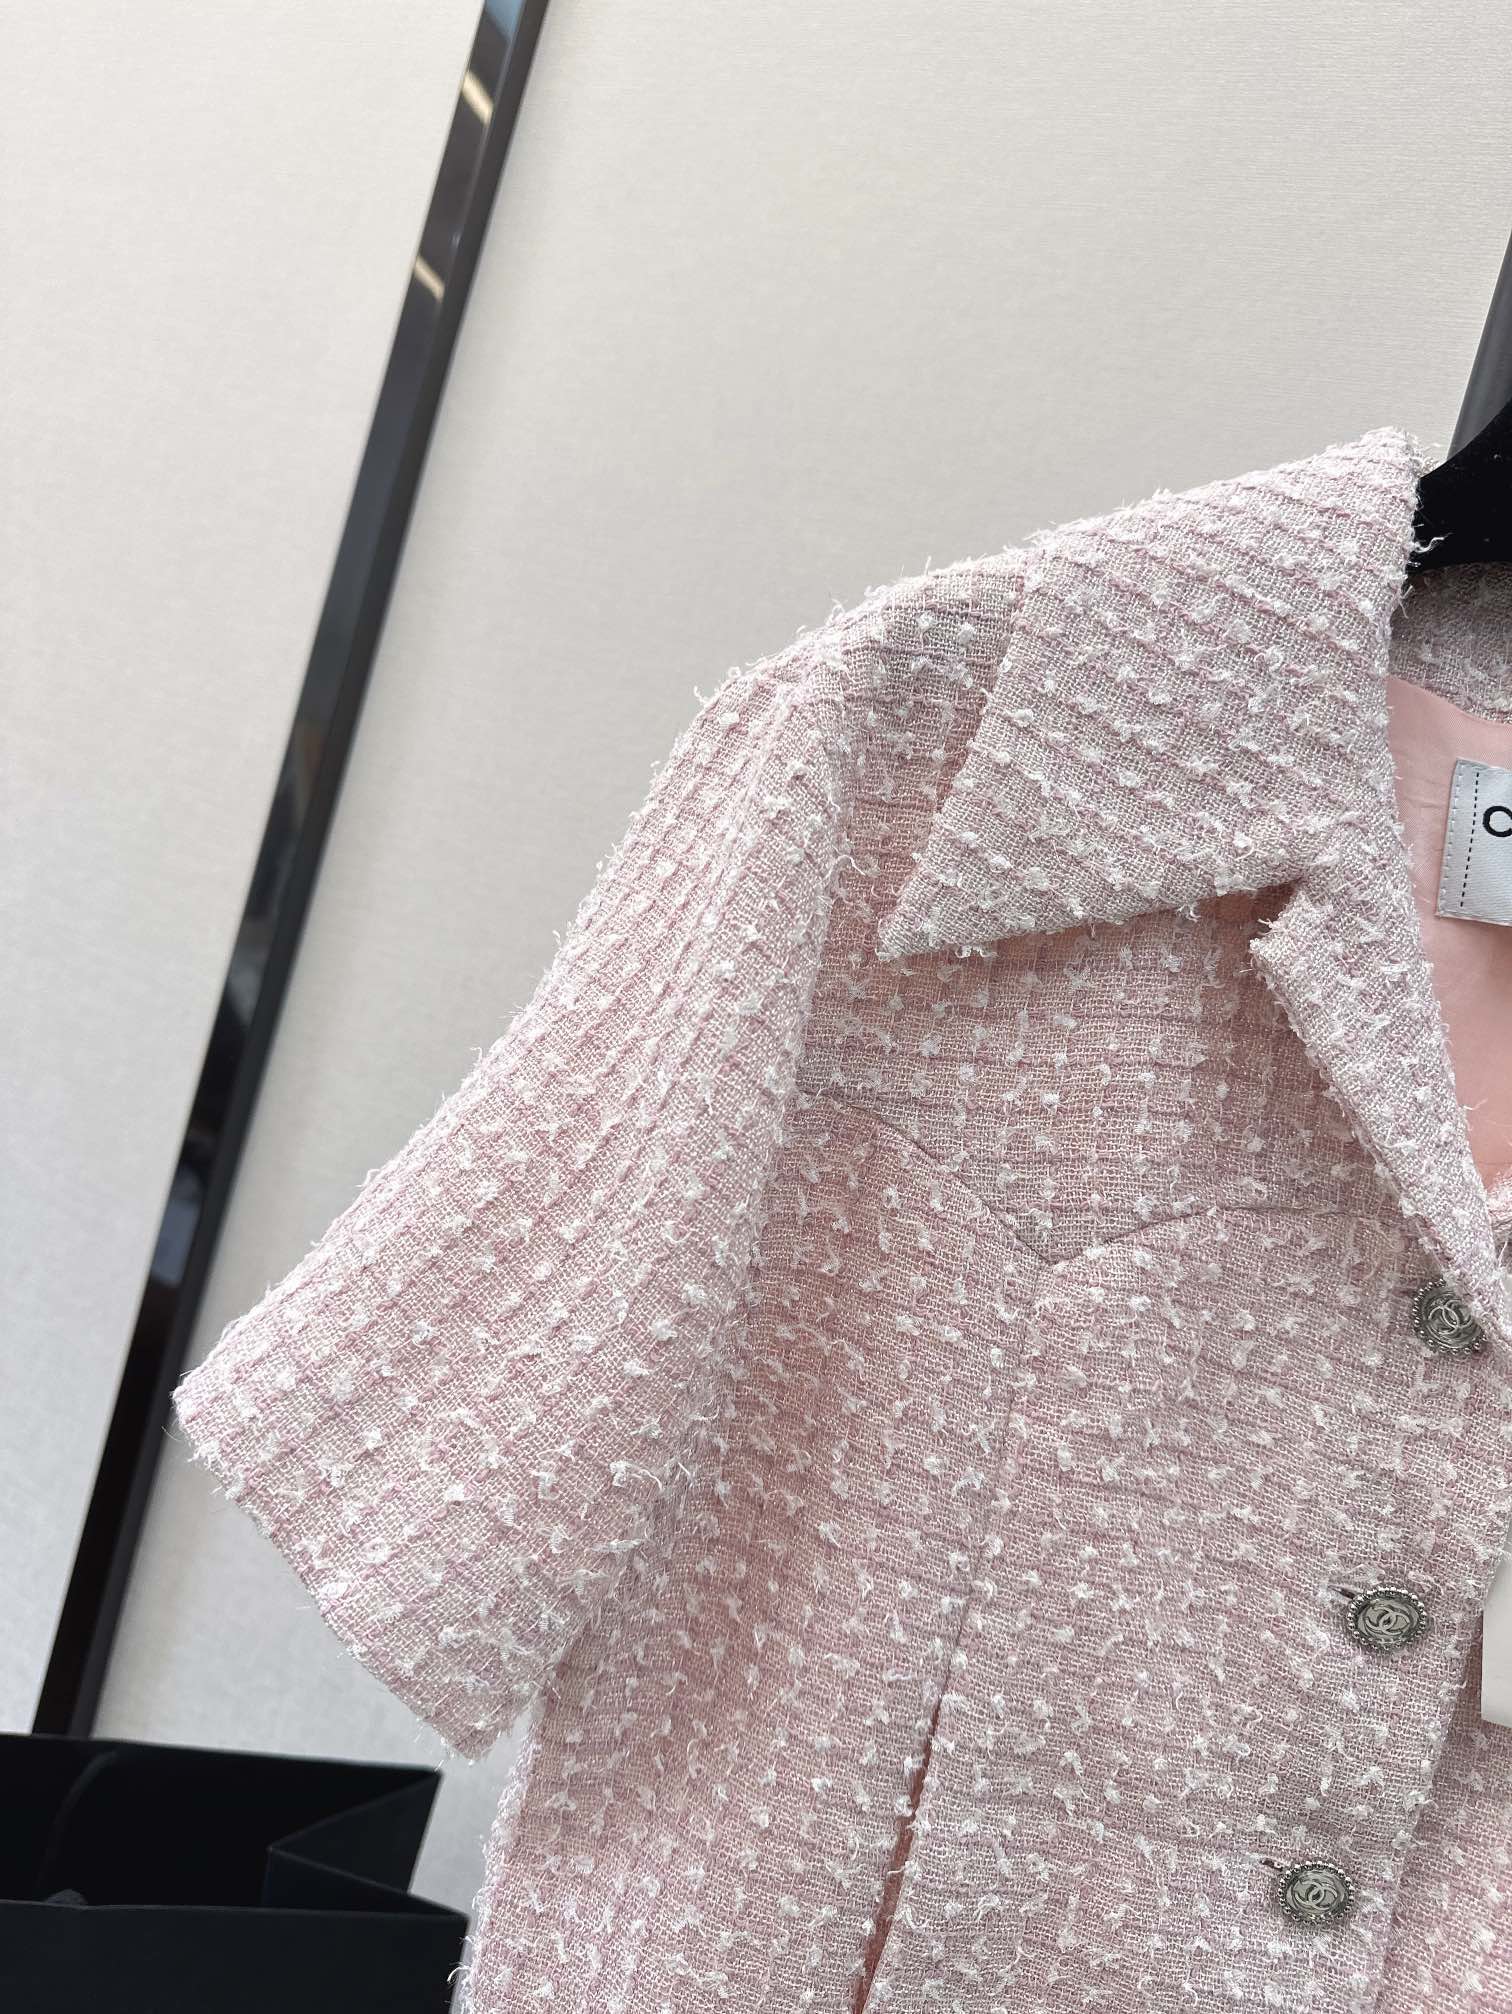 刘诗诗同款C家24Ss春夏最新款减龄粉色编织小短款外套巨显肤白的粉色系上身绝绝子1百分百真丝里衬细节加分